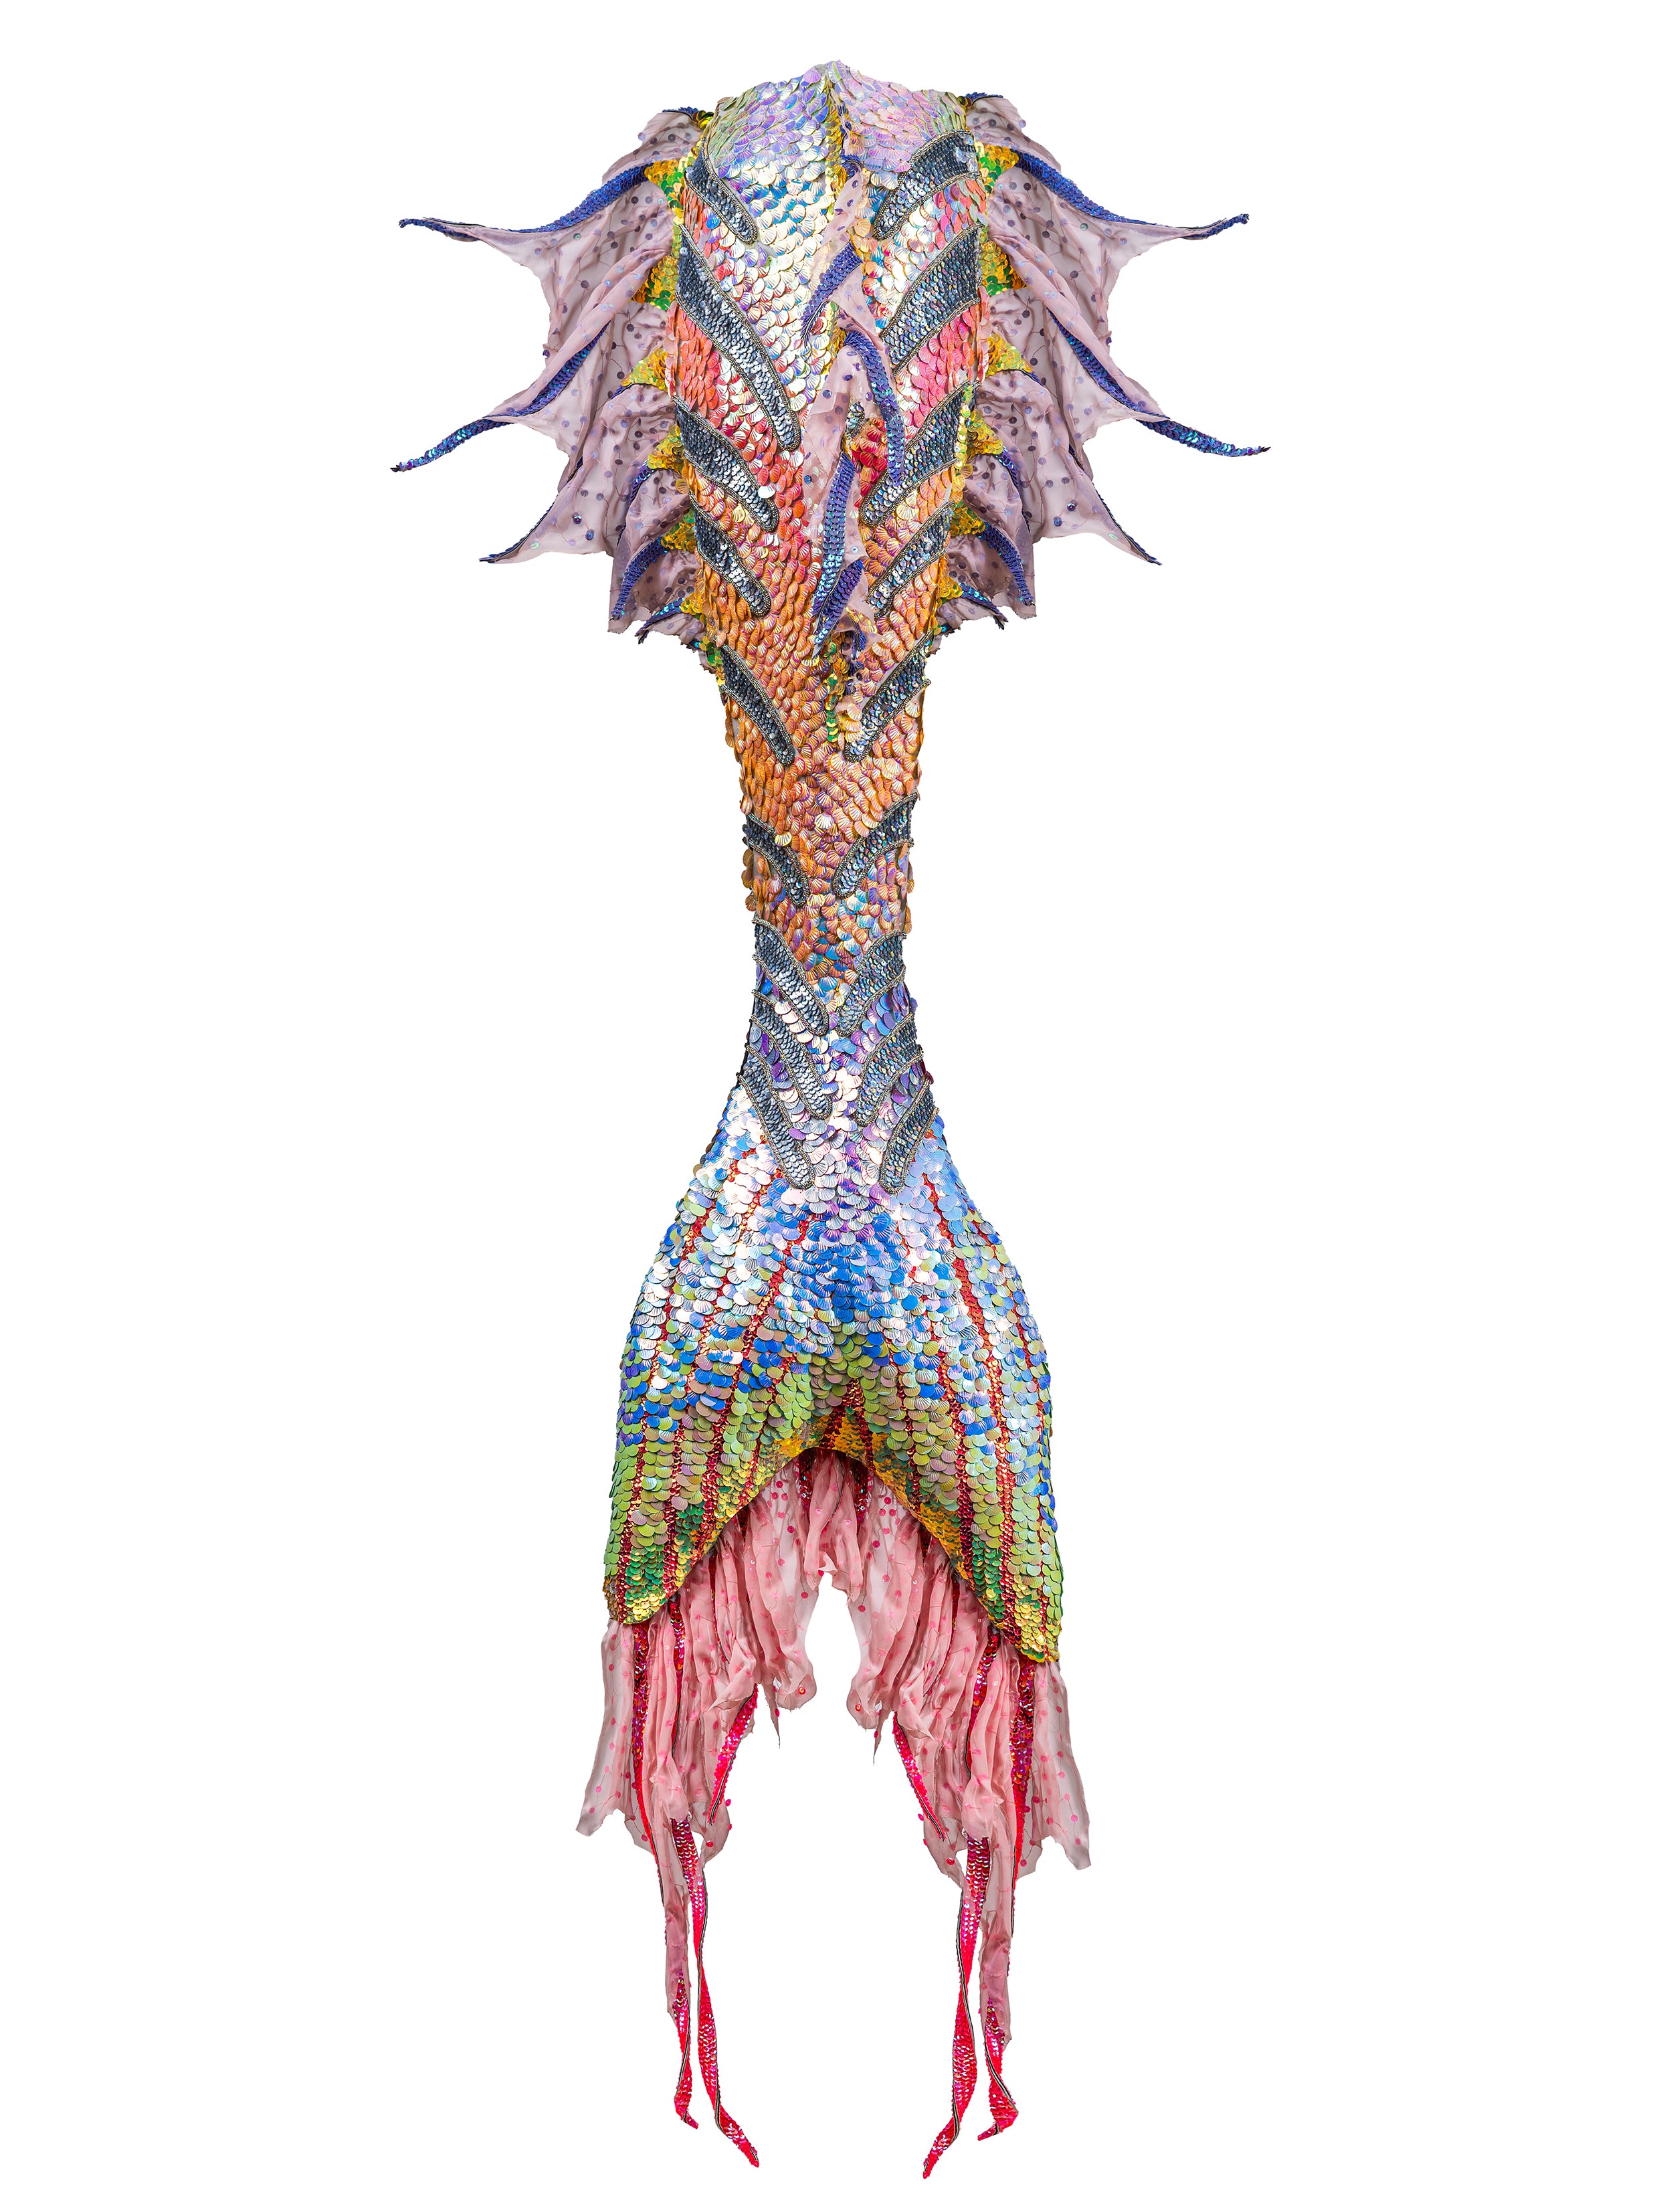 The Abbysia Mermaid Tail